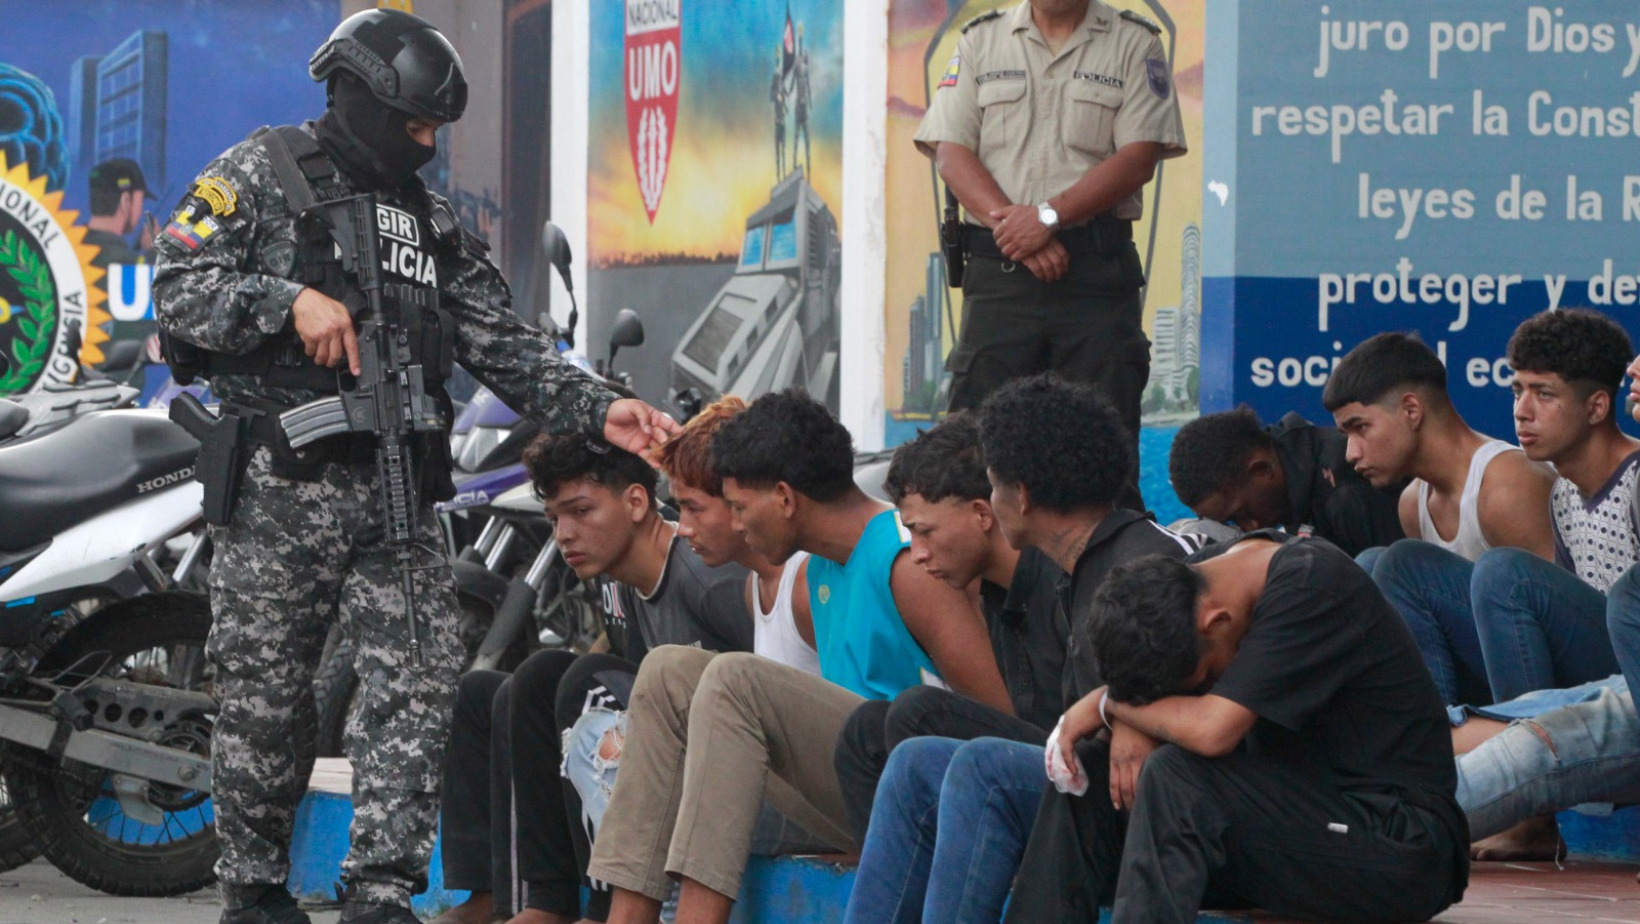 Algunos de los malhechores detenidos por las autoridades ecuatorianas. FOTO: Fuente externa